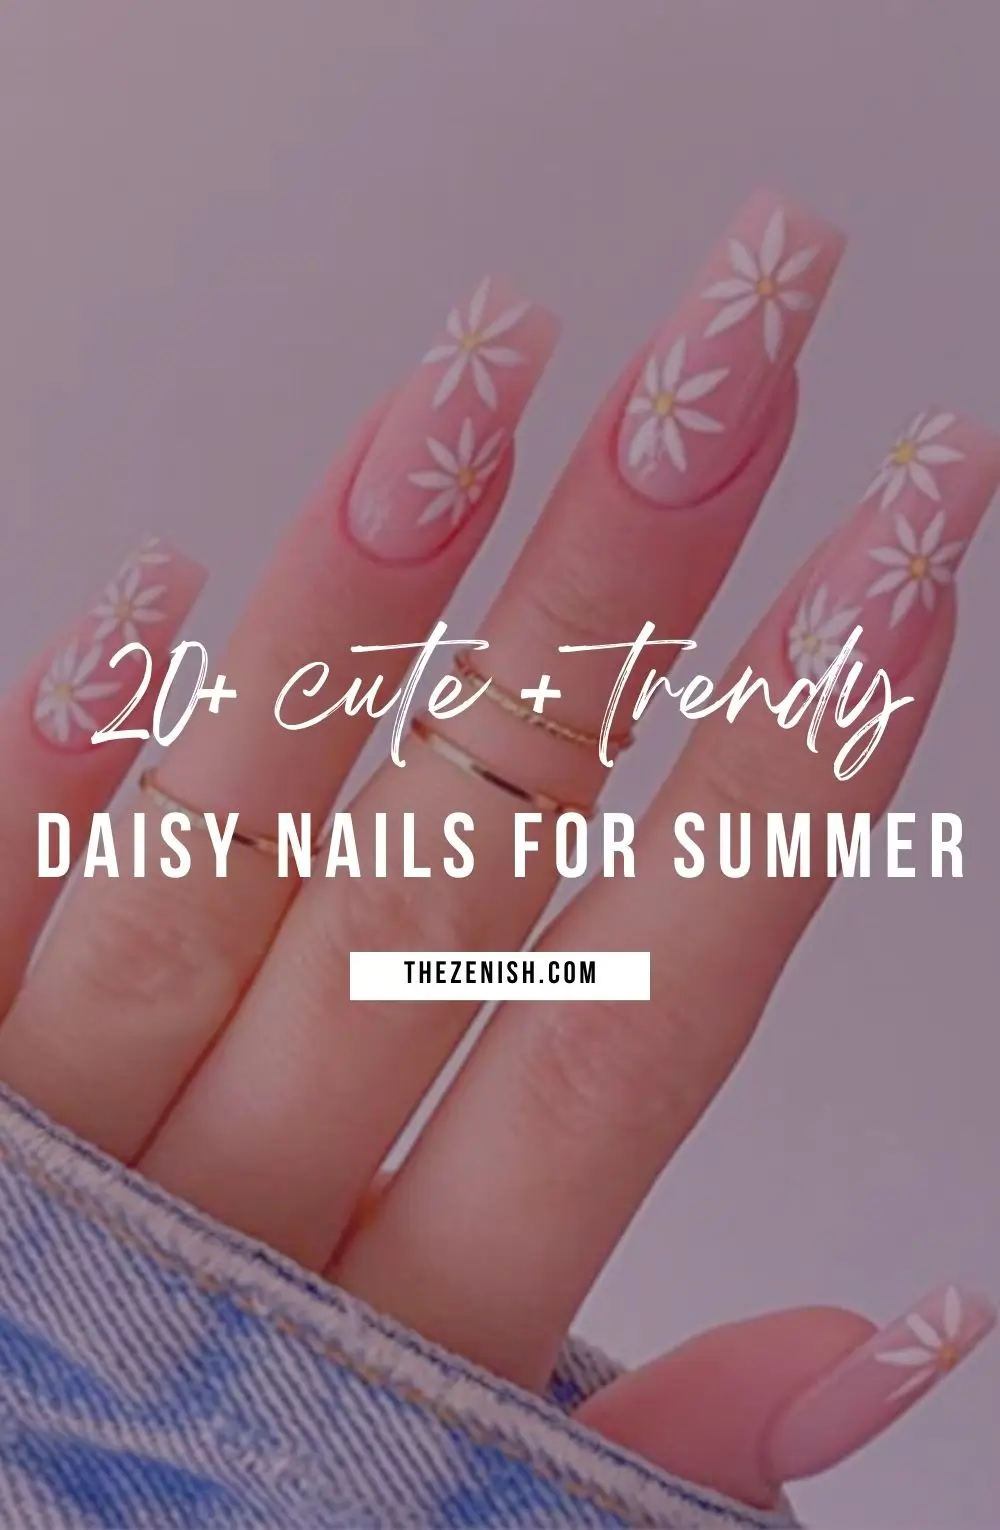 28 Stunning Daisy Nail Ideas for Summer 3 28 Stunning Daisy Nail Ideas for Summer